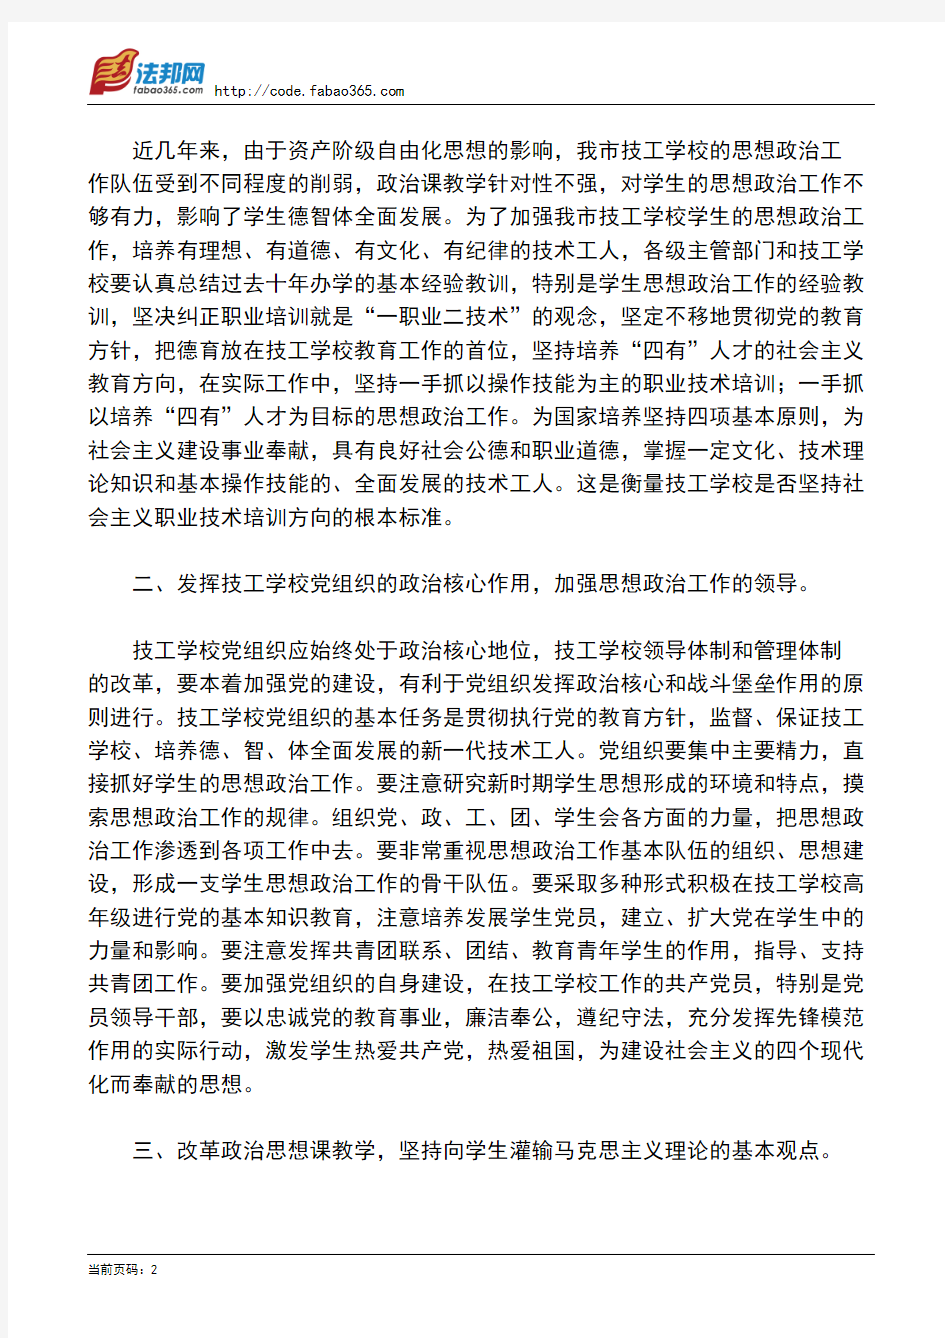 北京市劳动局印发《关于加强北京市技工学校学生思想政治工作的意见》的通知